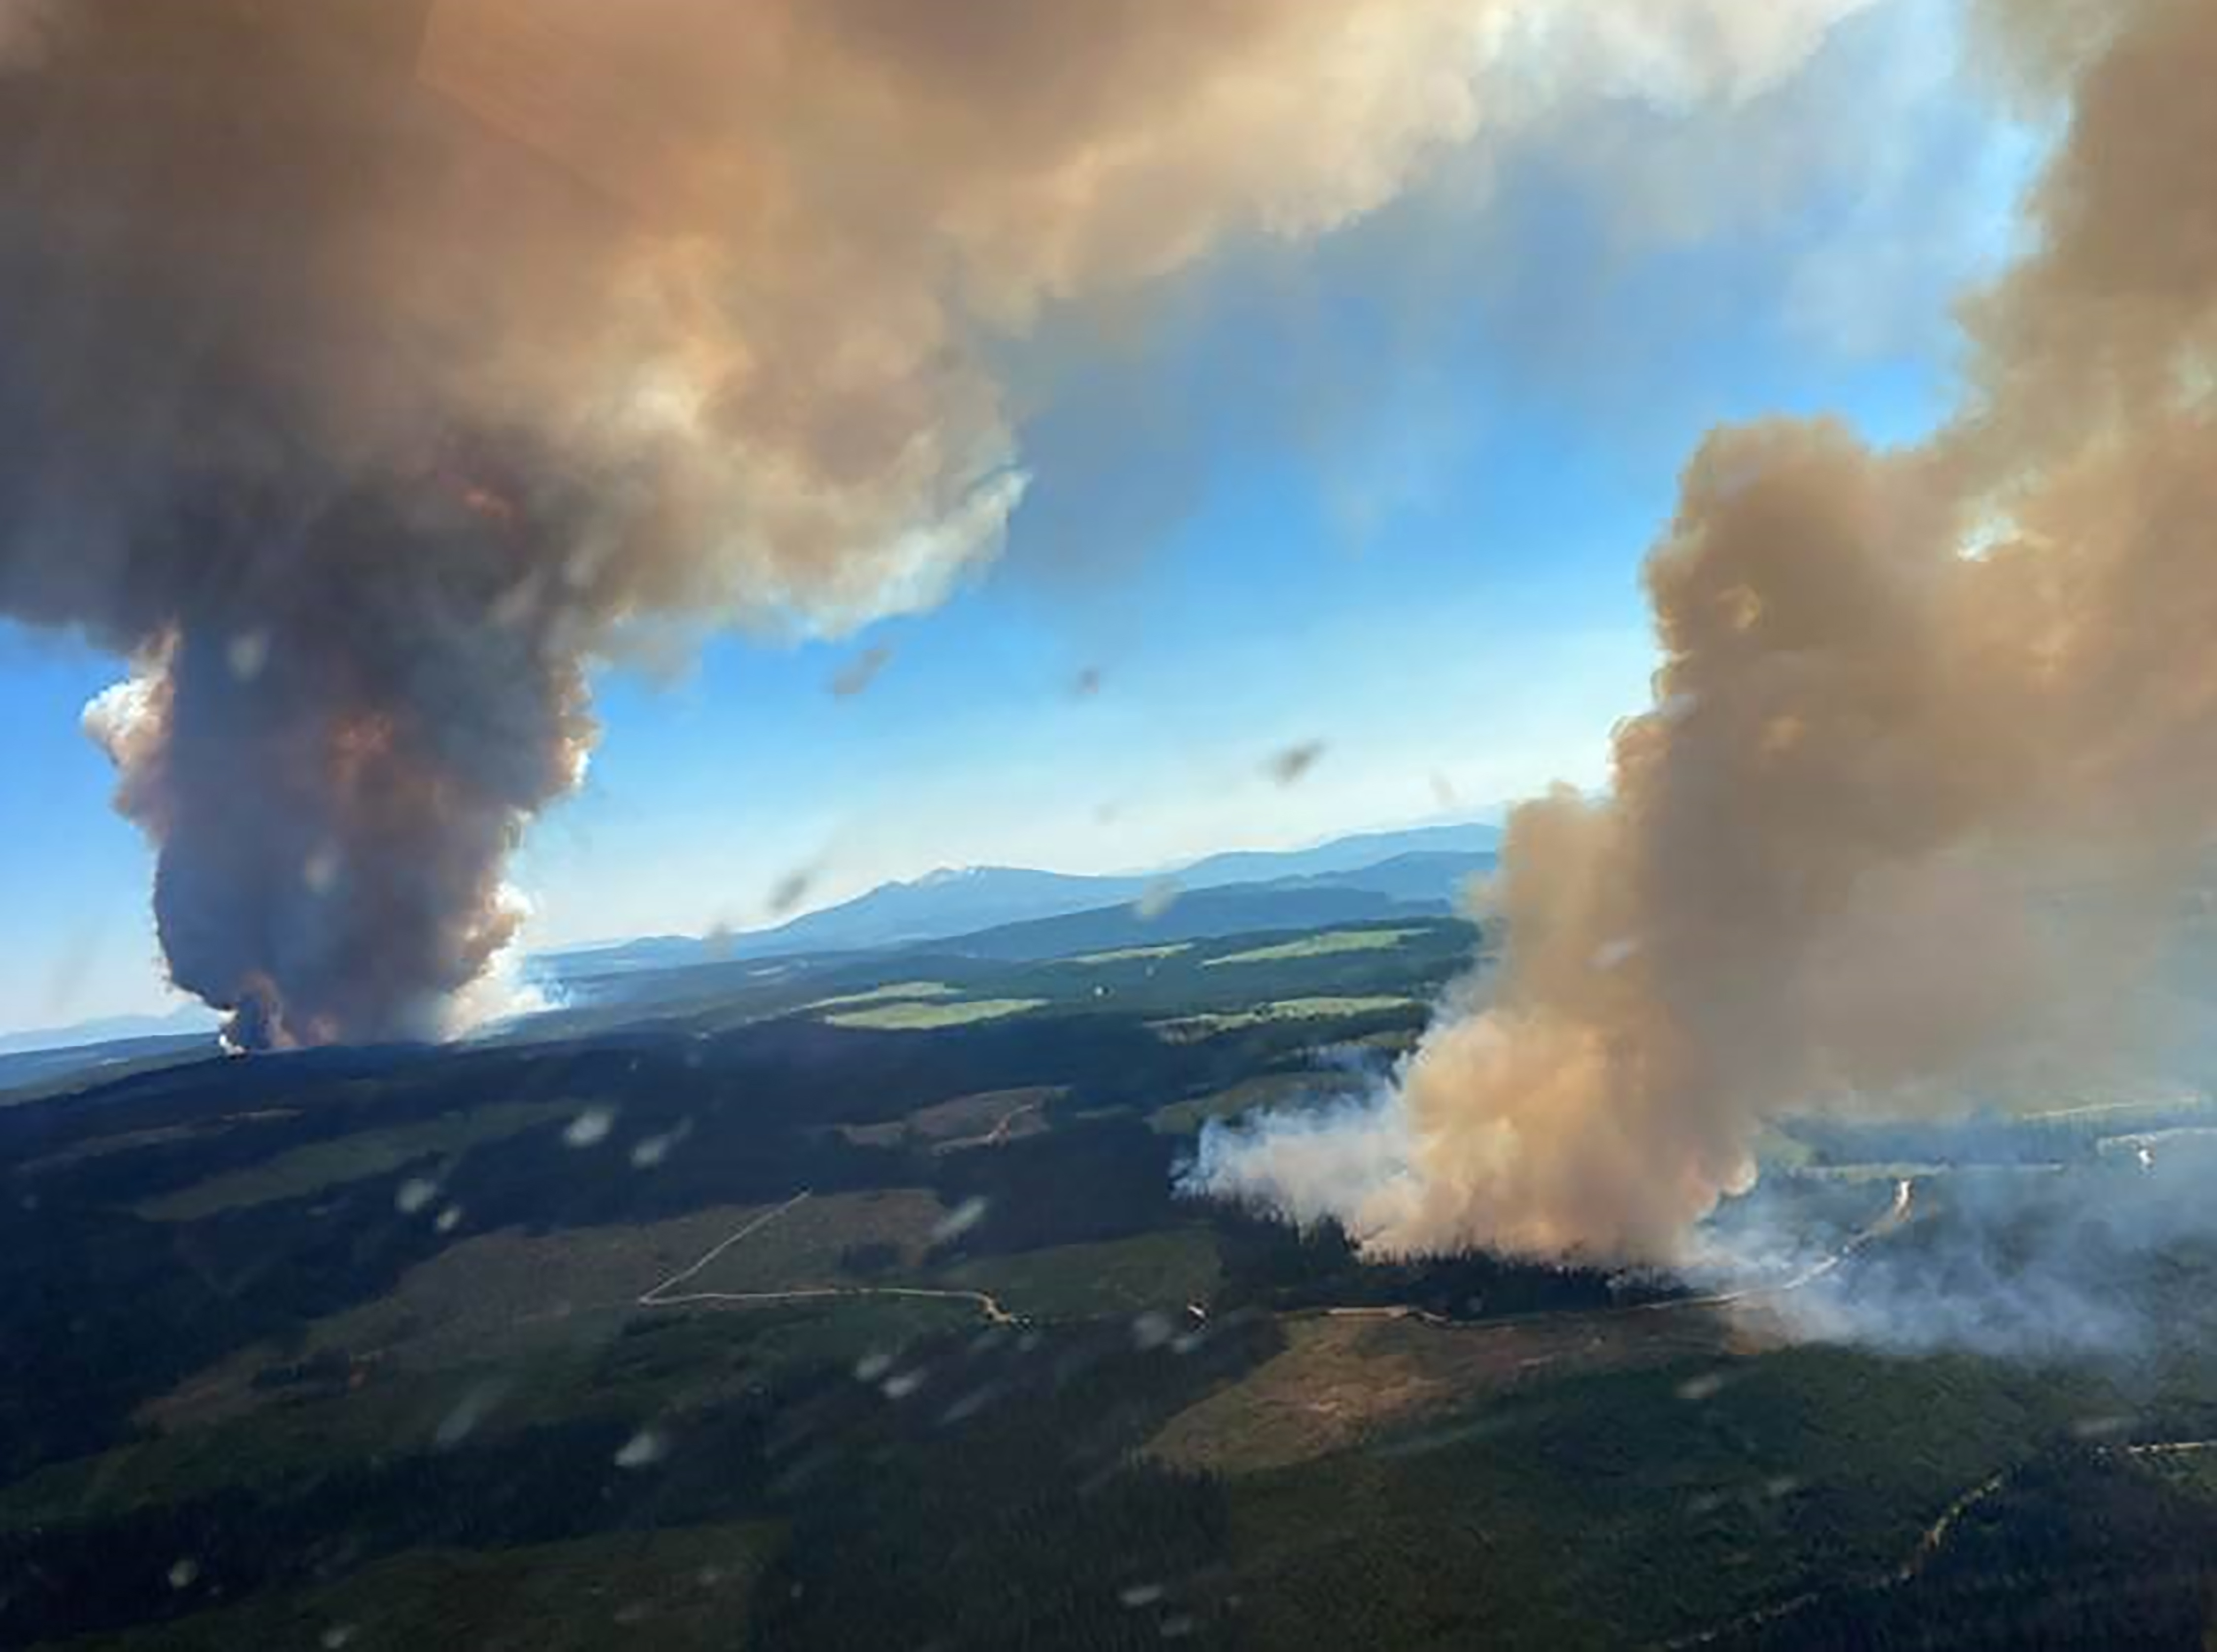 Imagen proporcionada por el BC Wildfire Service de los incendios forestales de Long Loch y Derrickson Lake ardiendo en la Columbia Británica, Canadá, el 30 de junio de 2021. (Foto Prensa Libre: BC Wildfire Service via The New York Times)